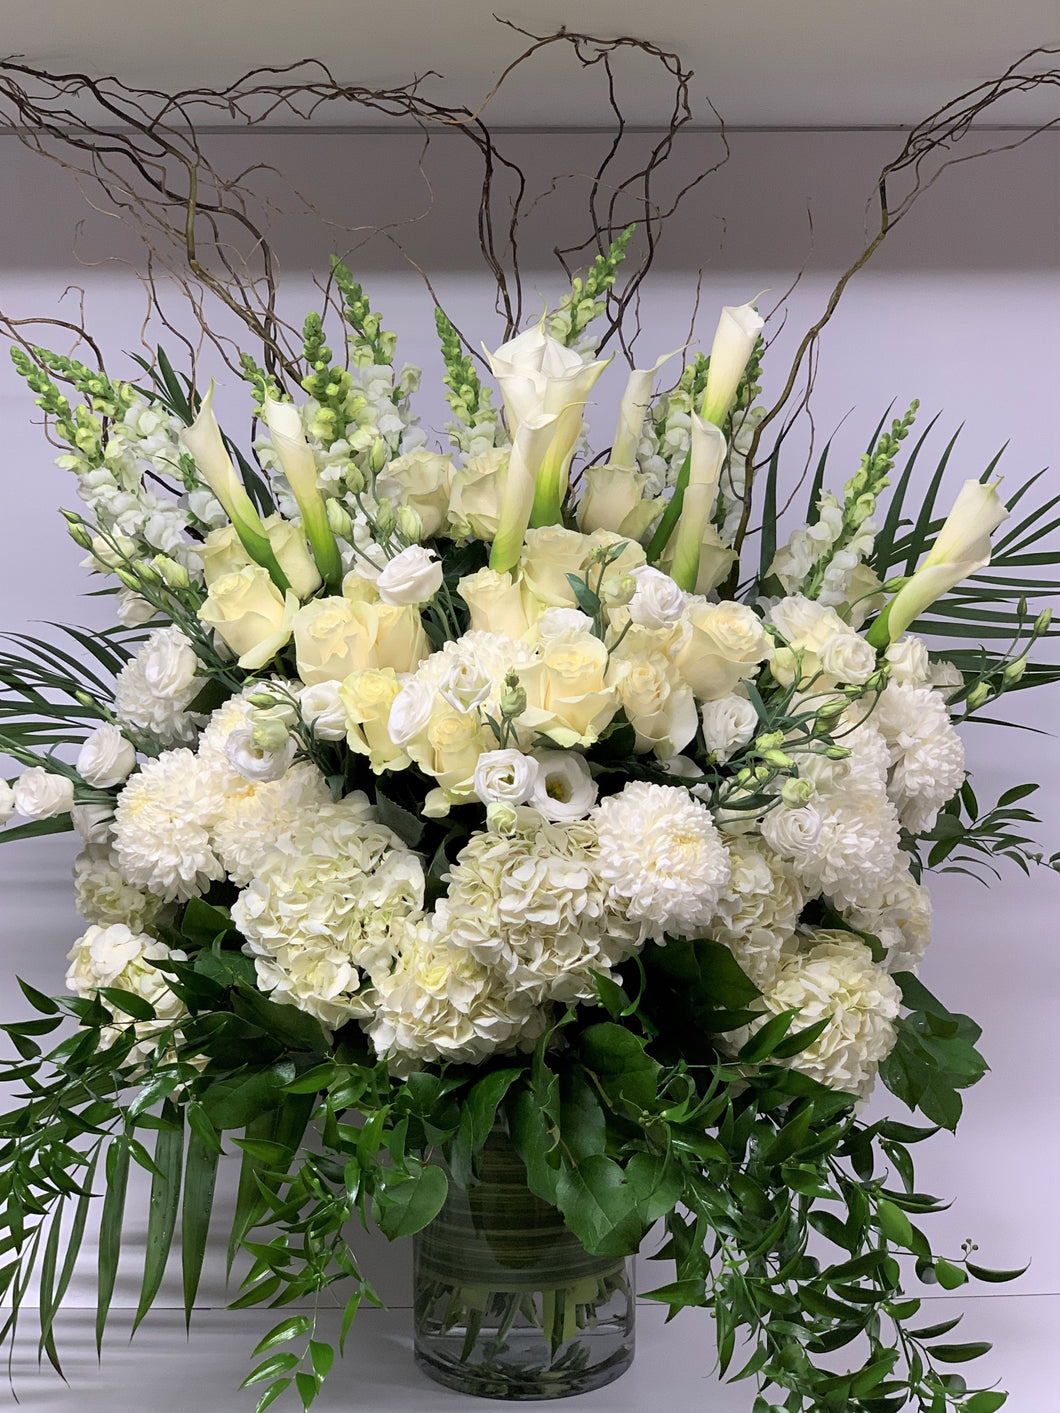 FNV144 - Classic White and Green Vase Arrangement - Flowerplustoronto